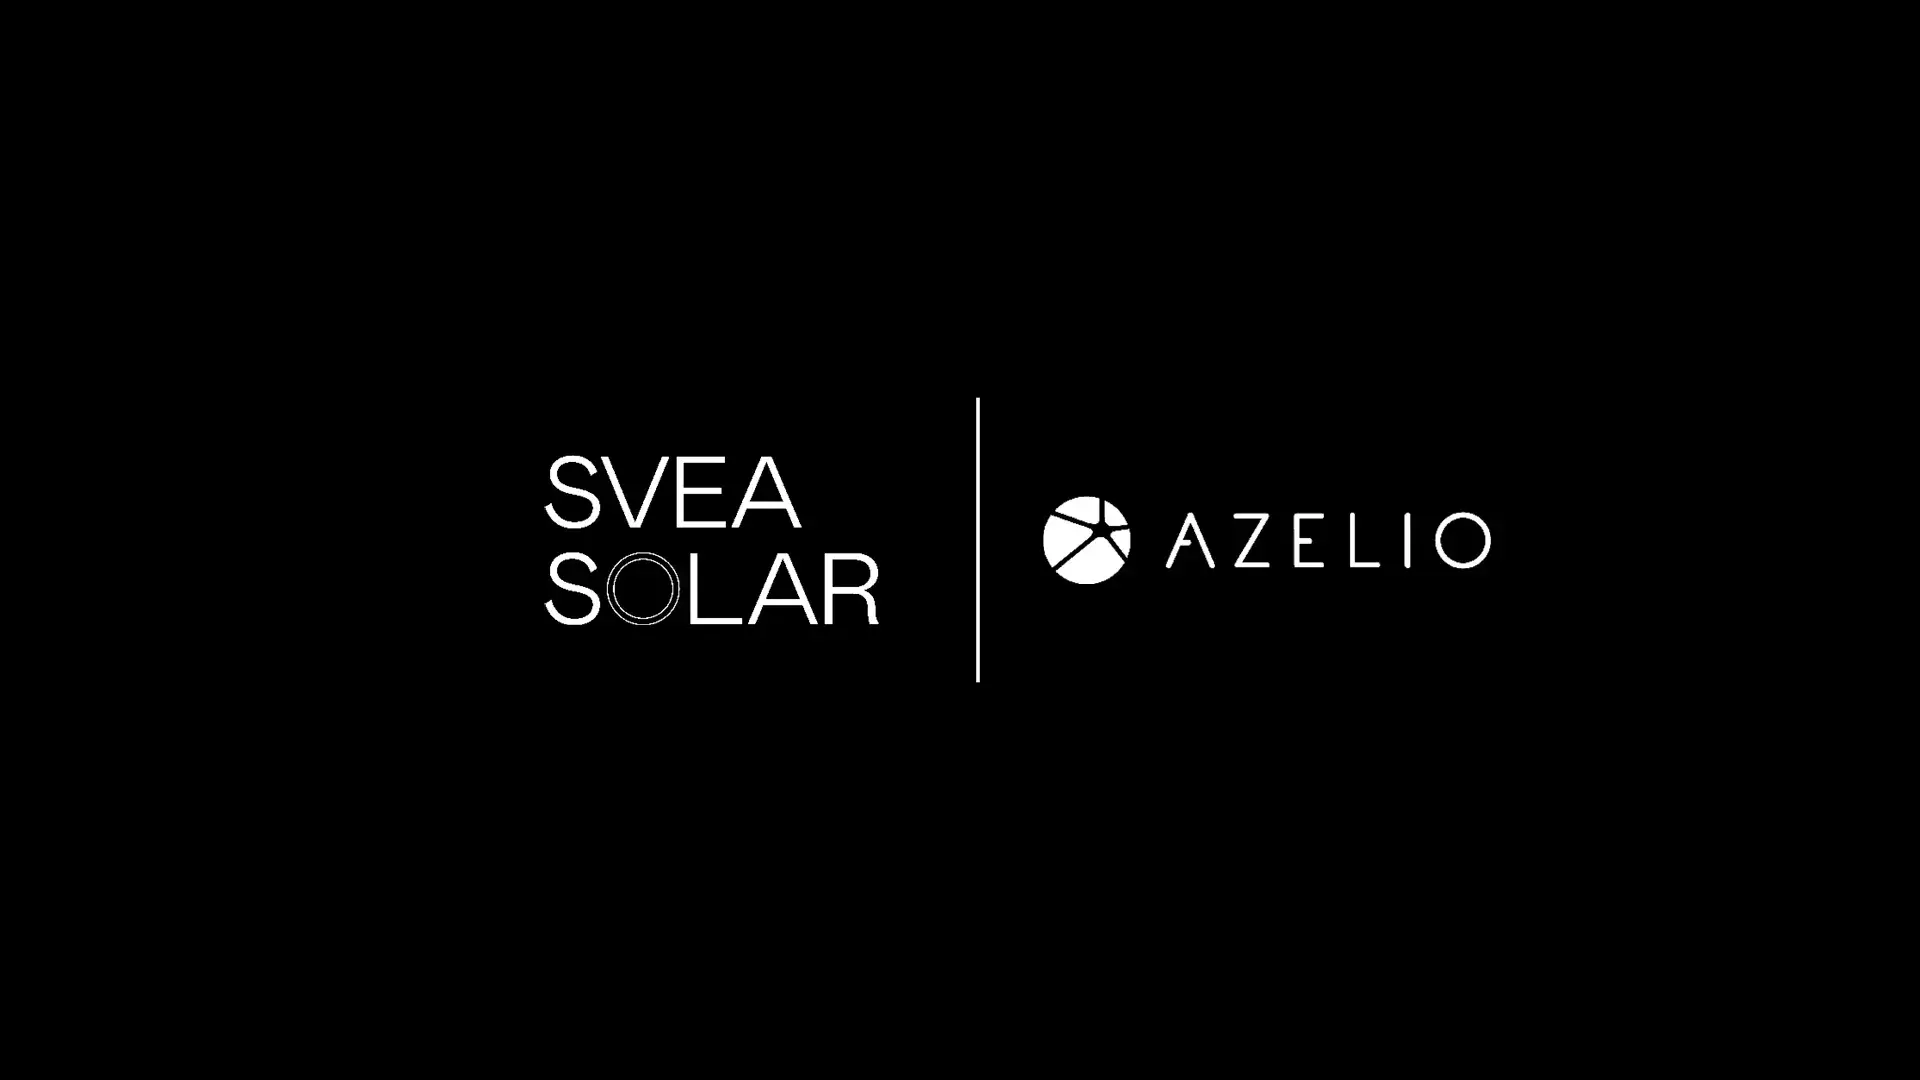 Svea Solar och Azelio tecknar avsiktsförklaring för gemensamma projekt med energilagring och solceller